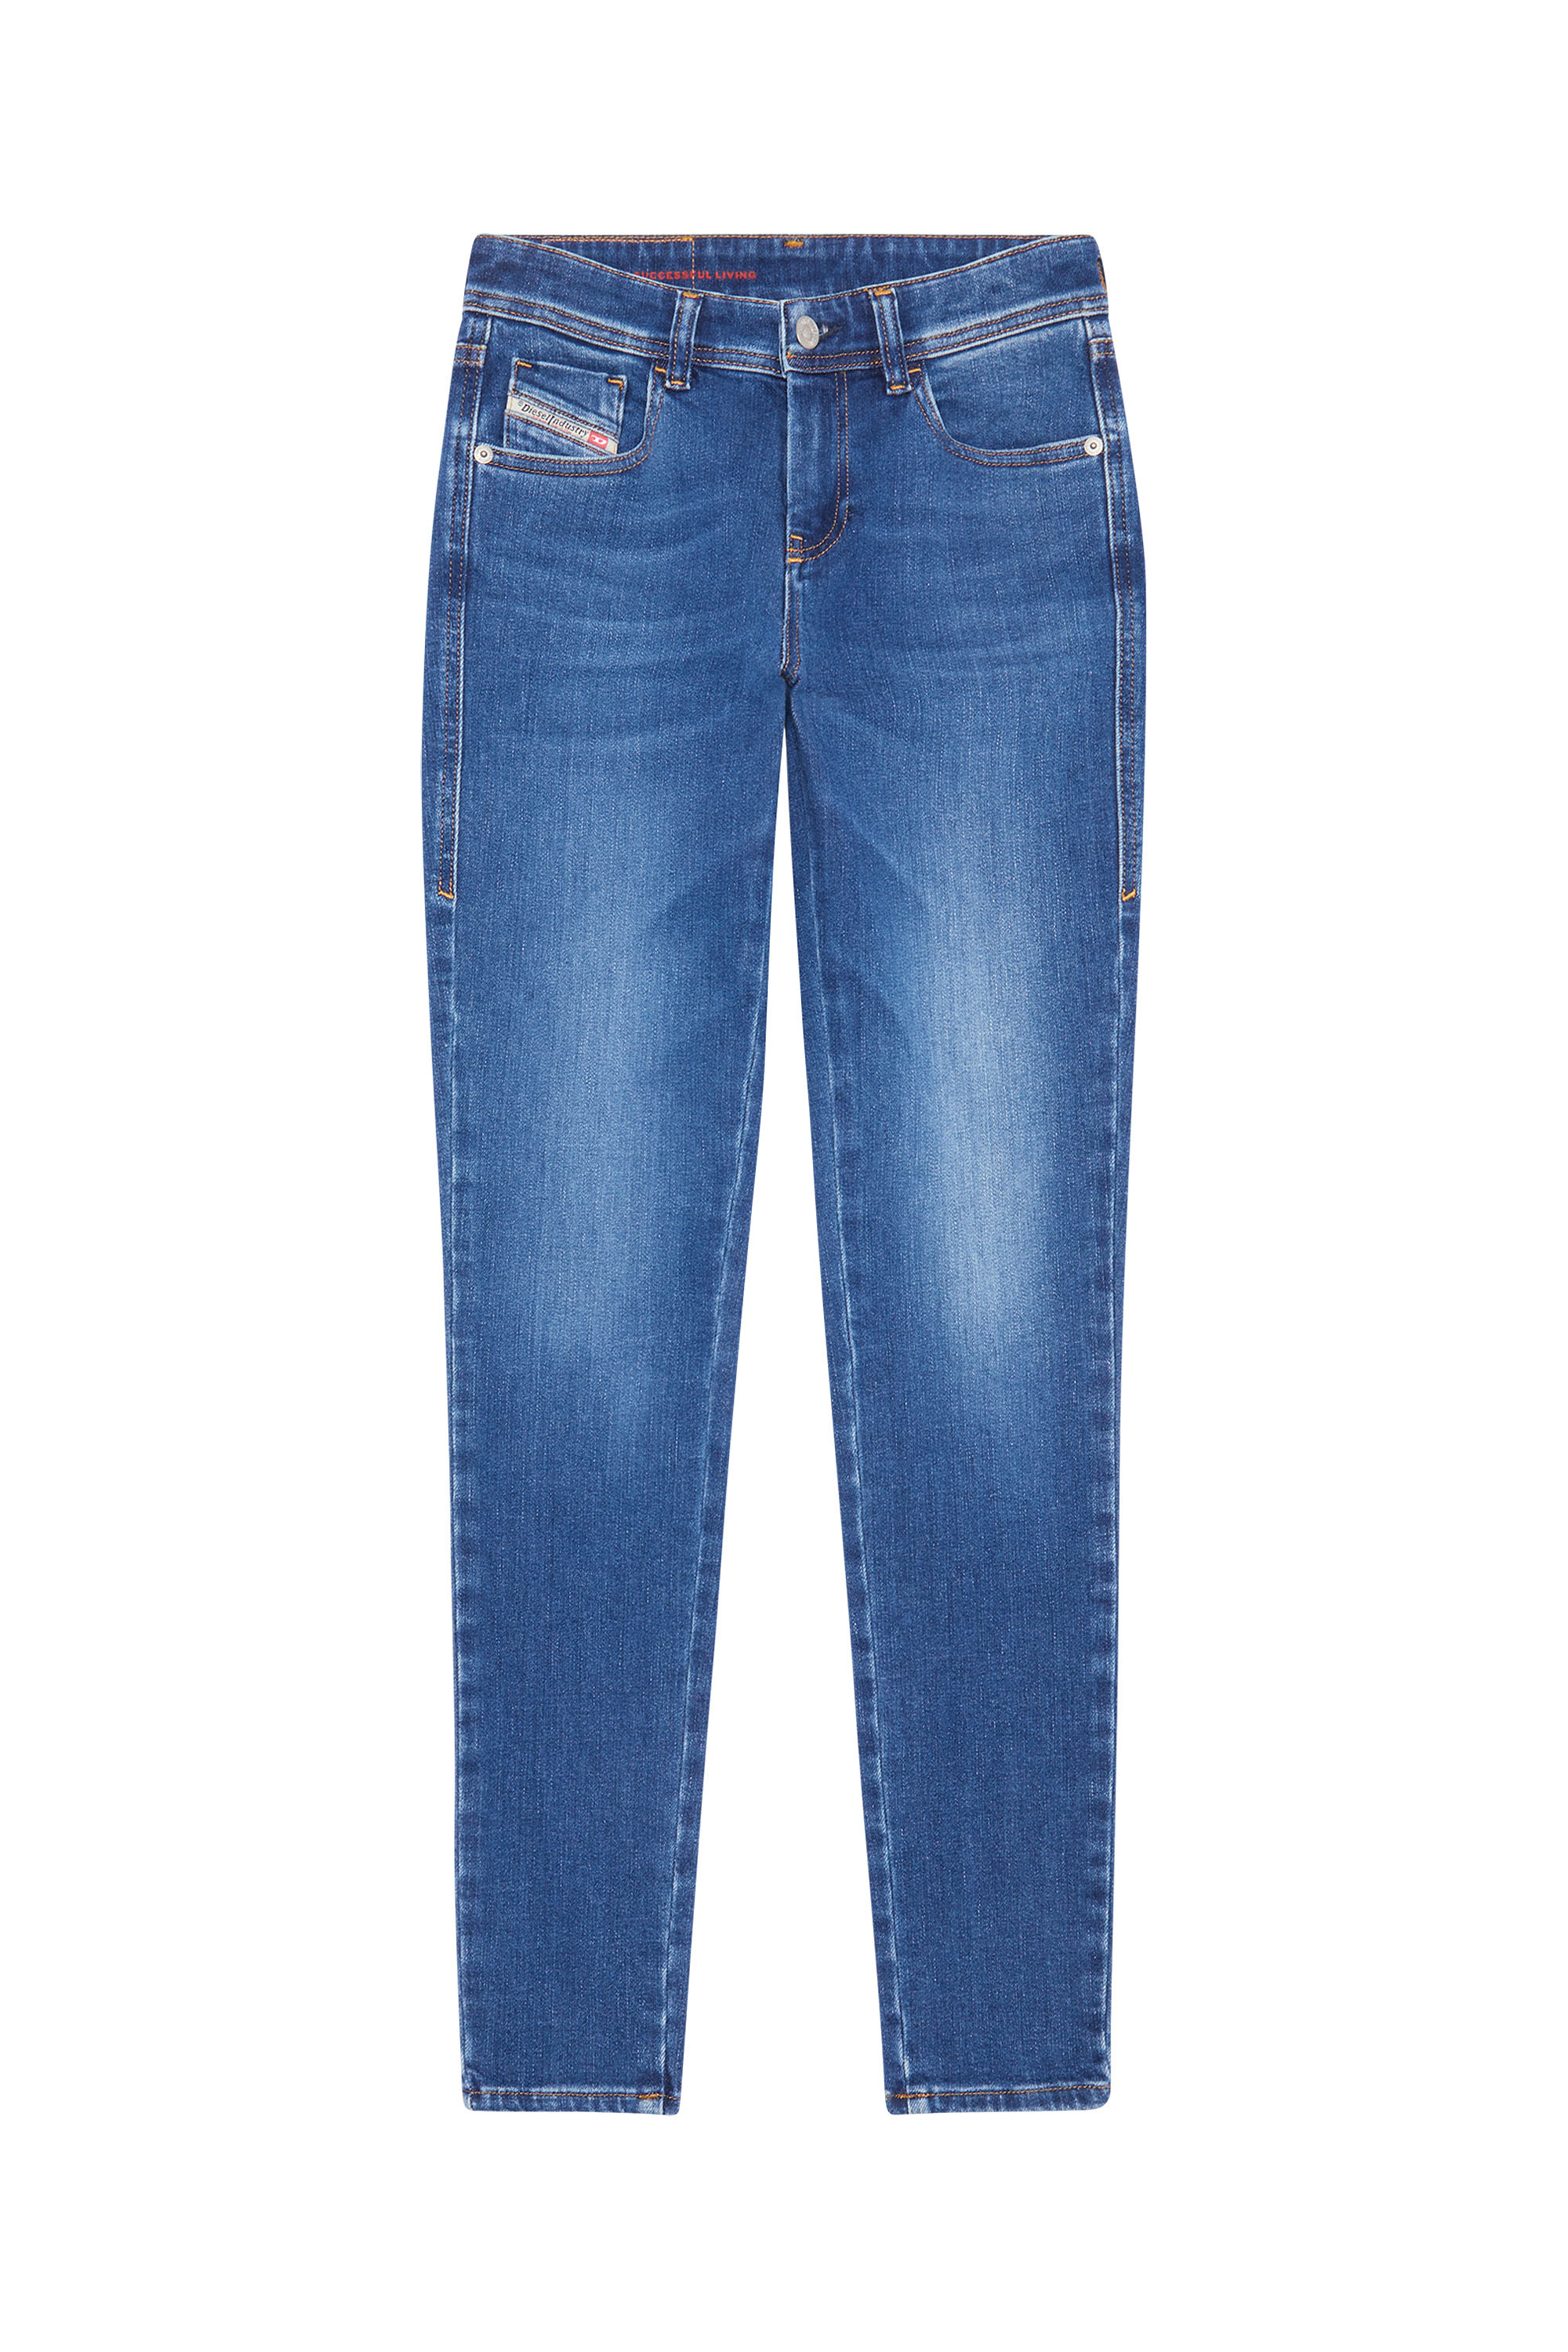 Diesel - Super skinny Jeans 2017 Slandy 09C21, Medium blue - Image 7